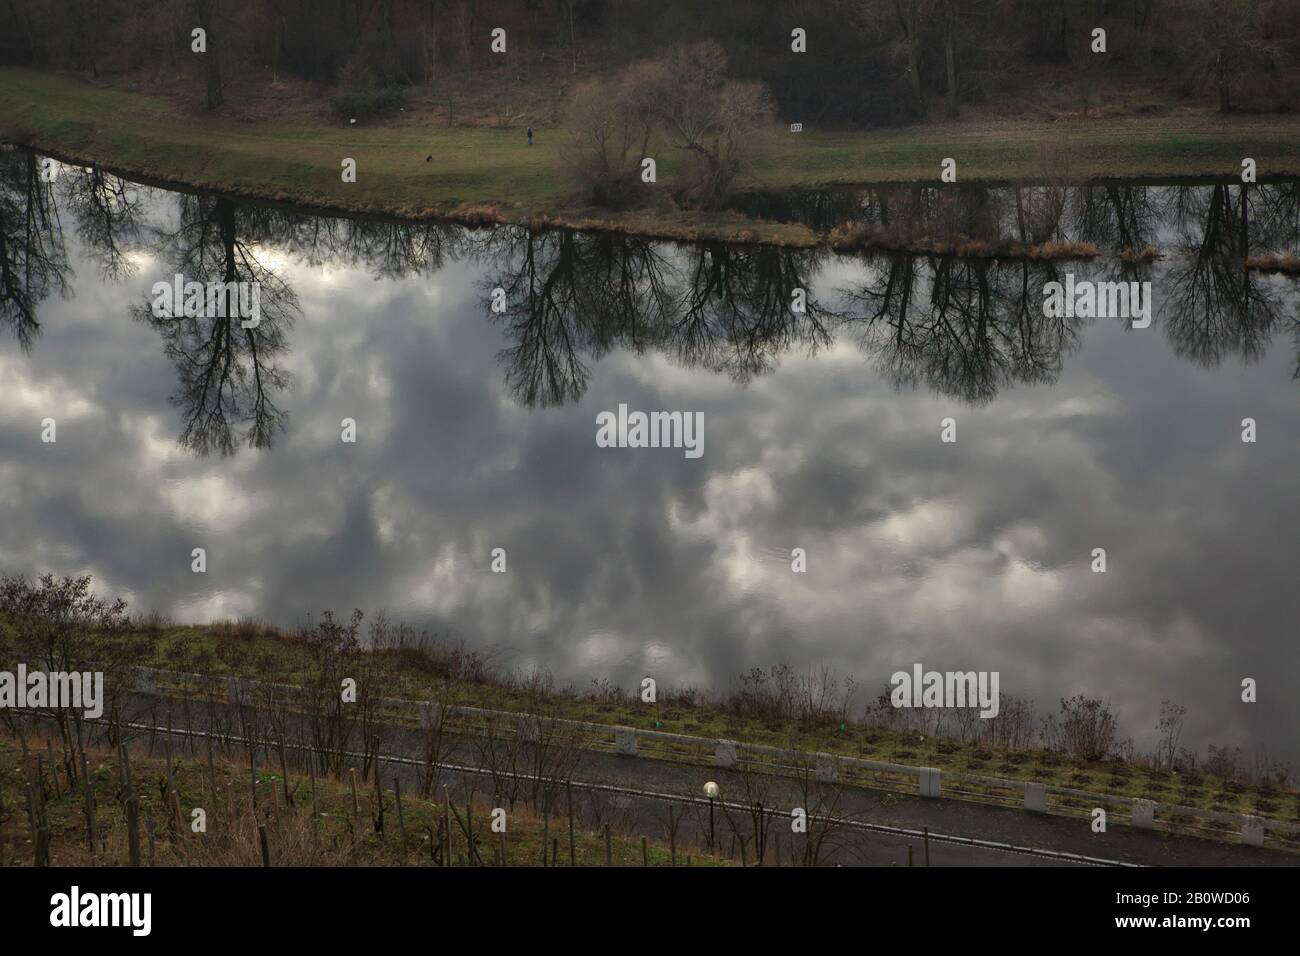 La rivière Elbe photographiée de la ville de Mělník en Bohême centrale, République tchèque. Banque D'Images